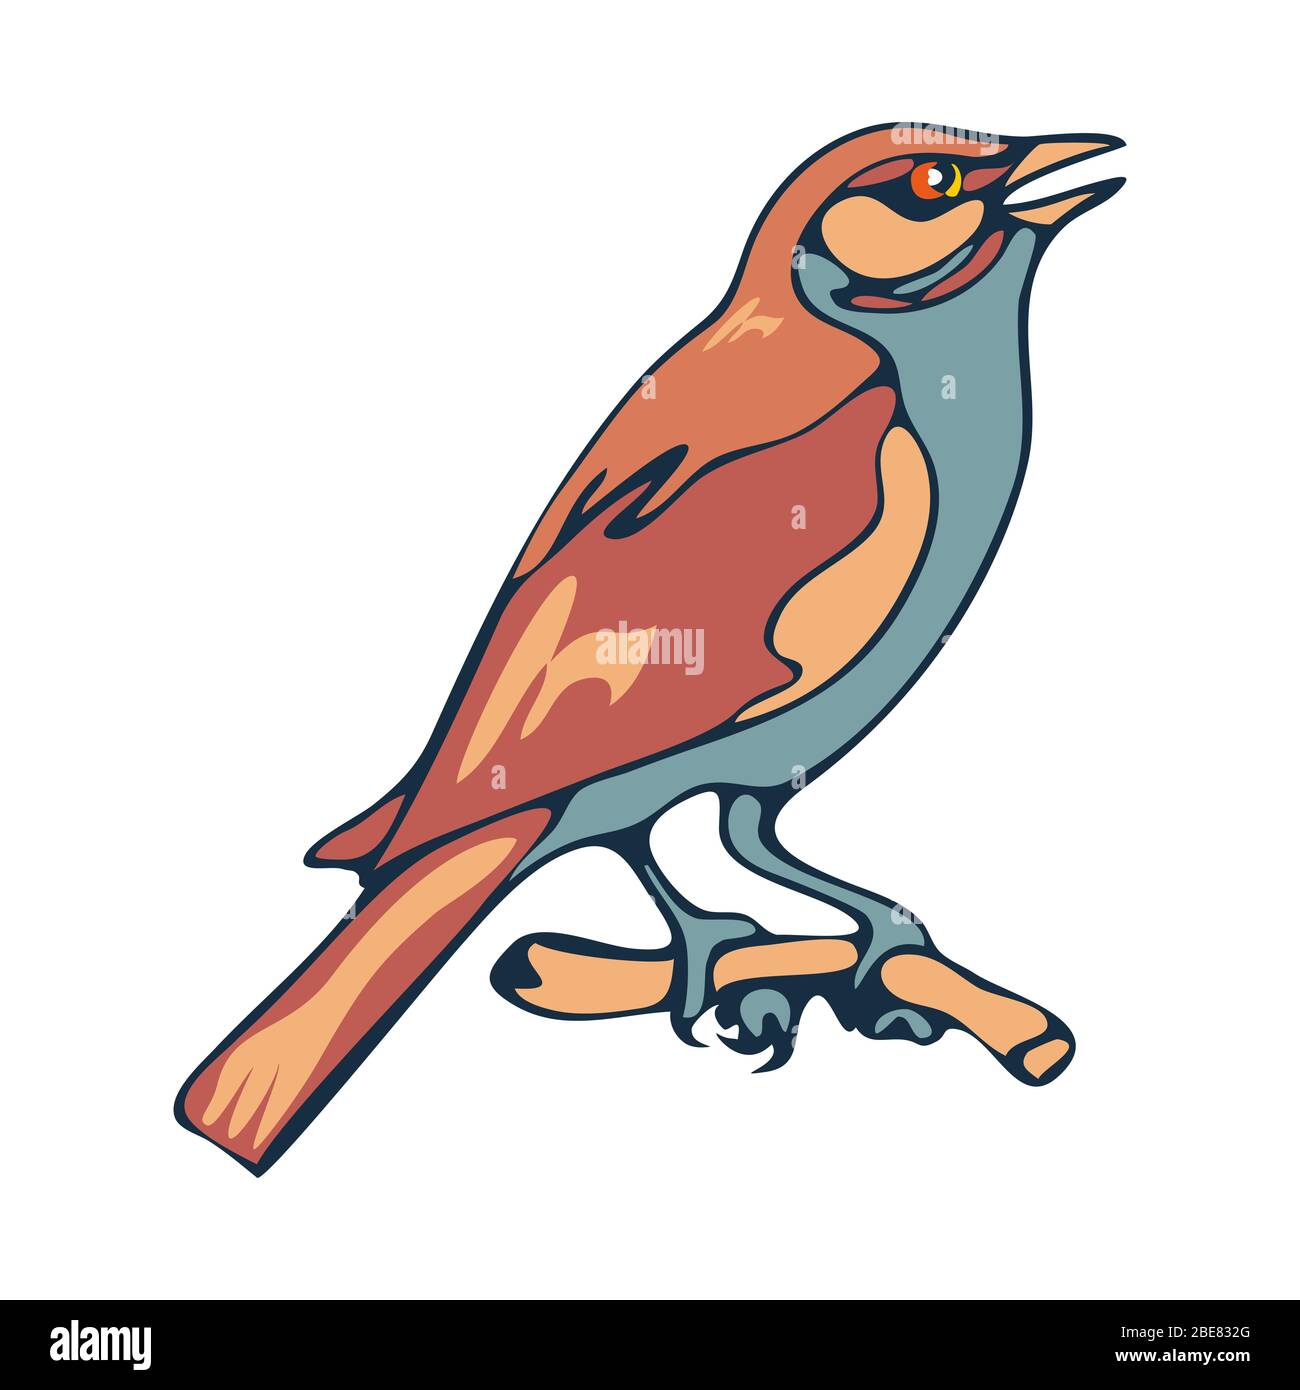 Sparrow, un petit oiseau de ville. Illustration dans le style de dessin animé. Image vectorielle isolée sur un fond blanc. Illustration de Vecteur